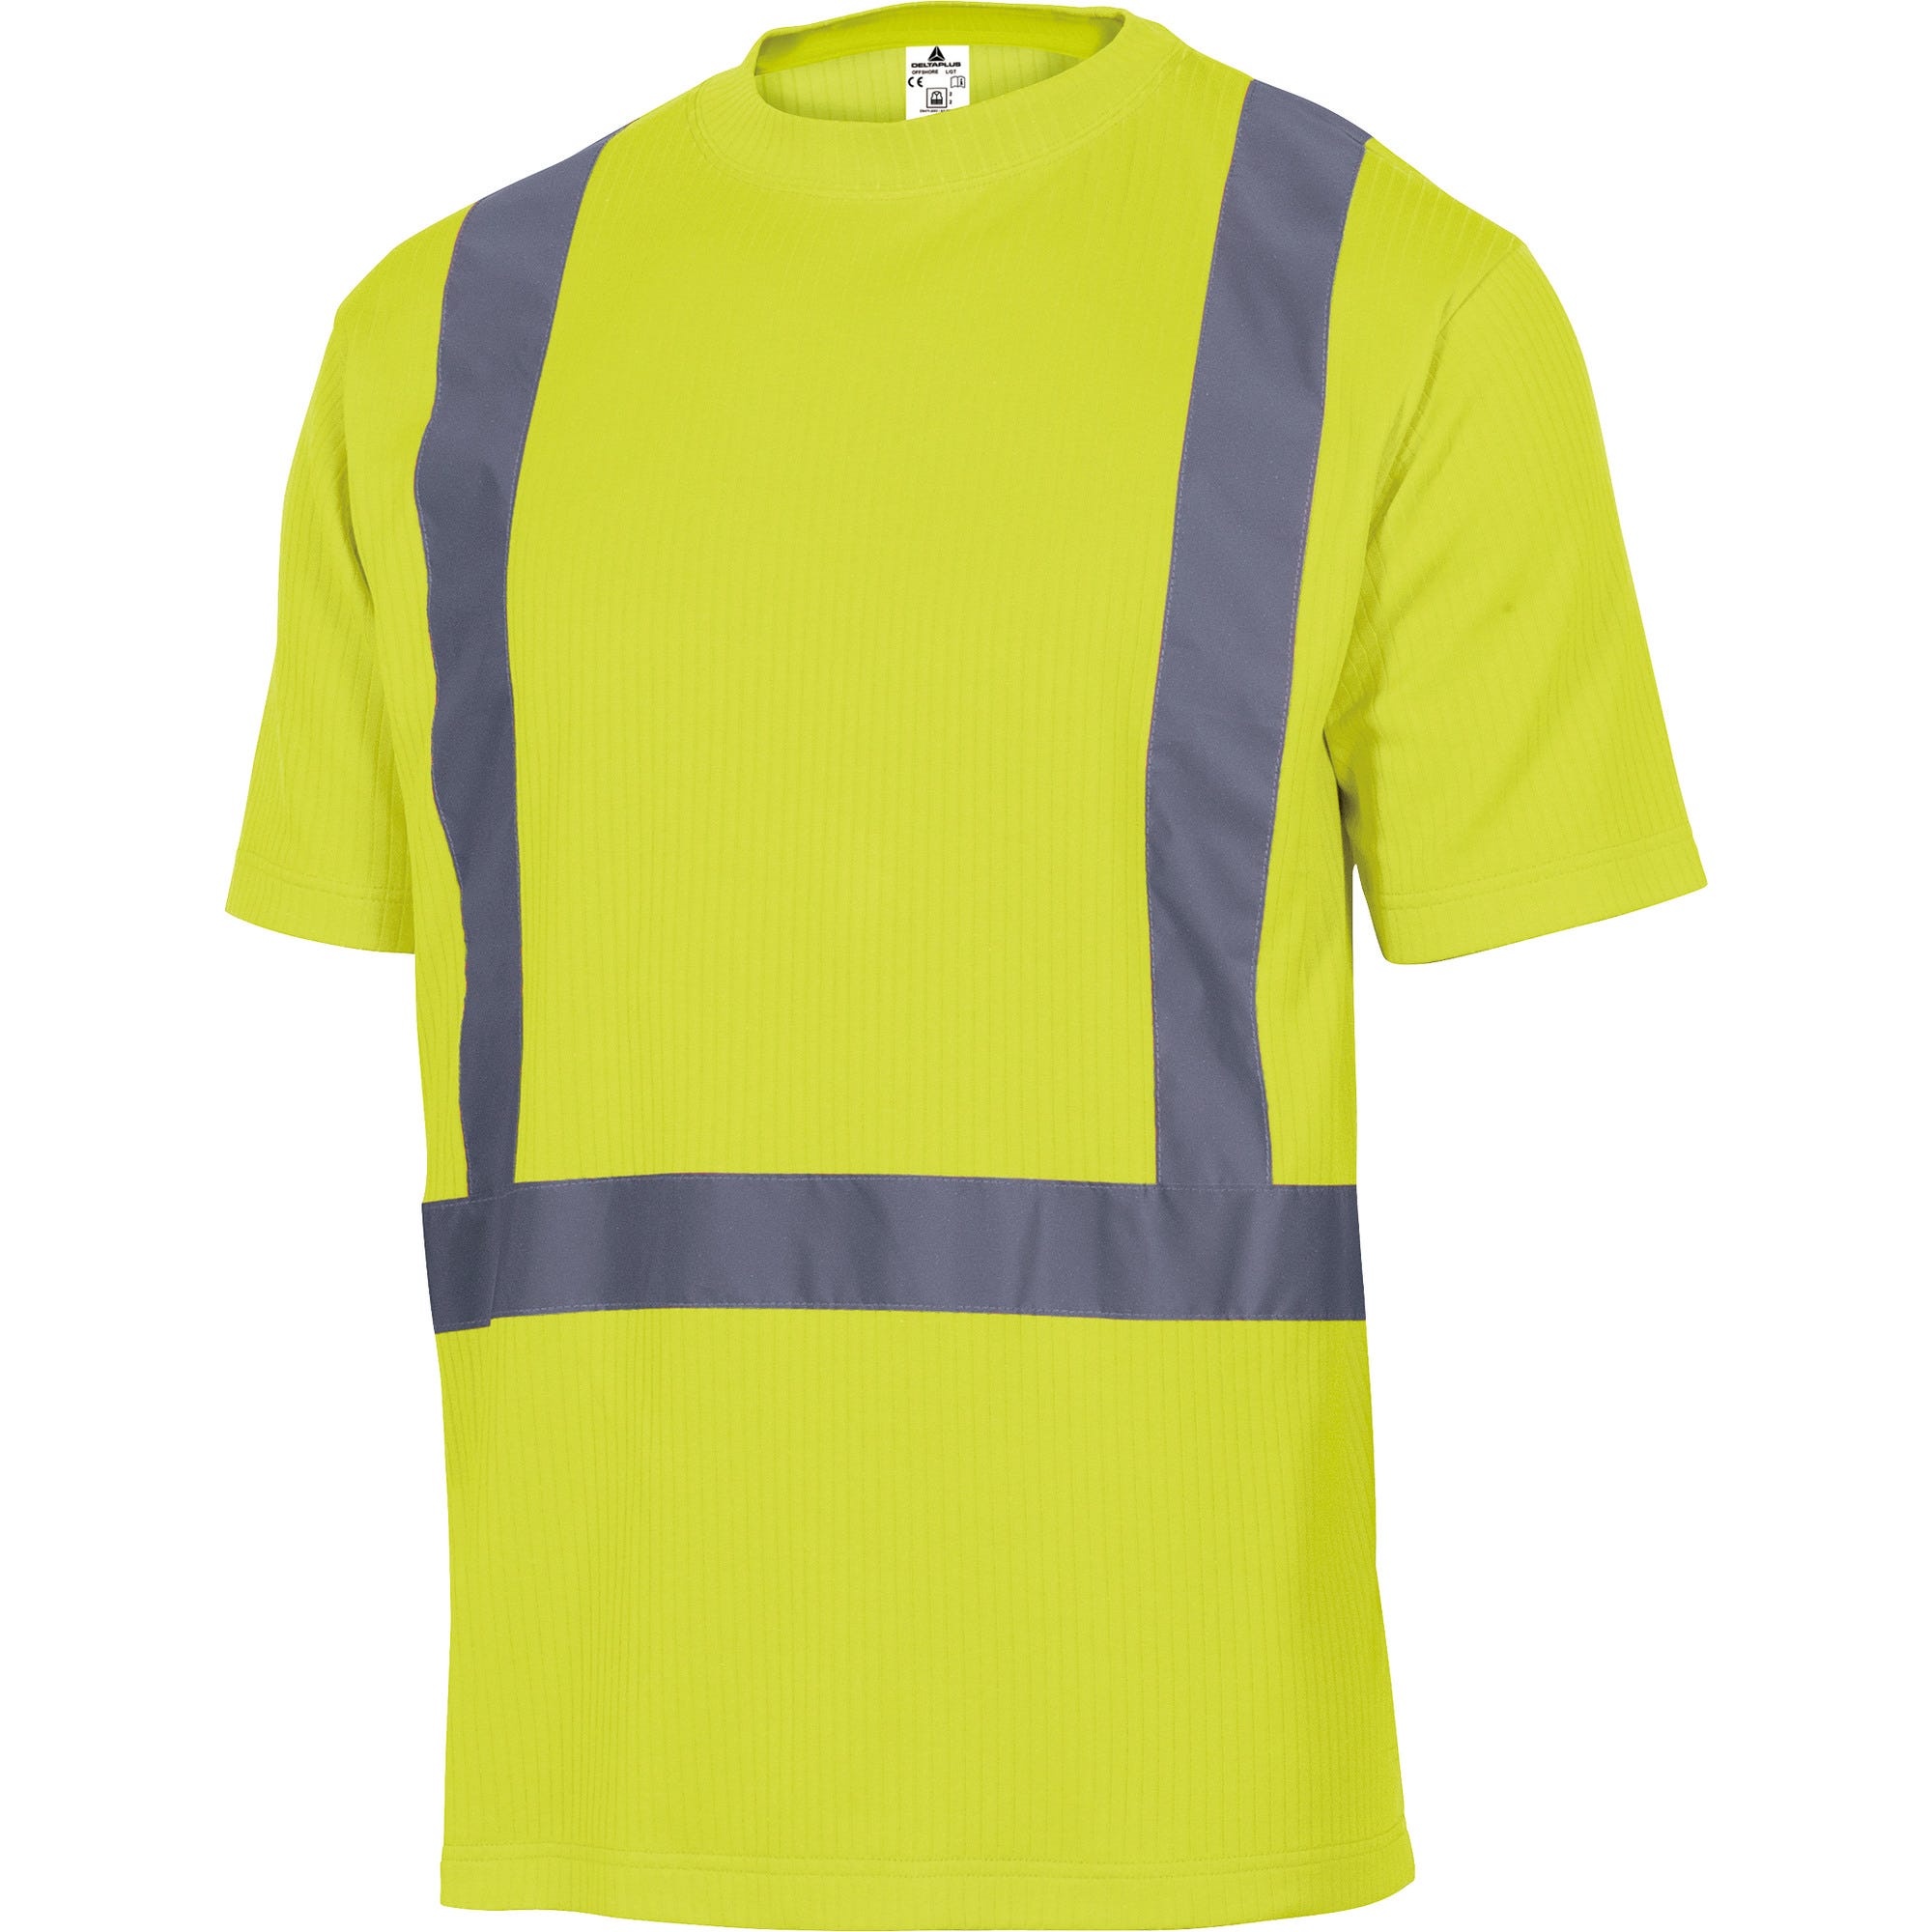 Tee shirt haute visibilité manches courtes jaune Taille M - DELTA PLUS 0